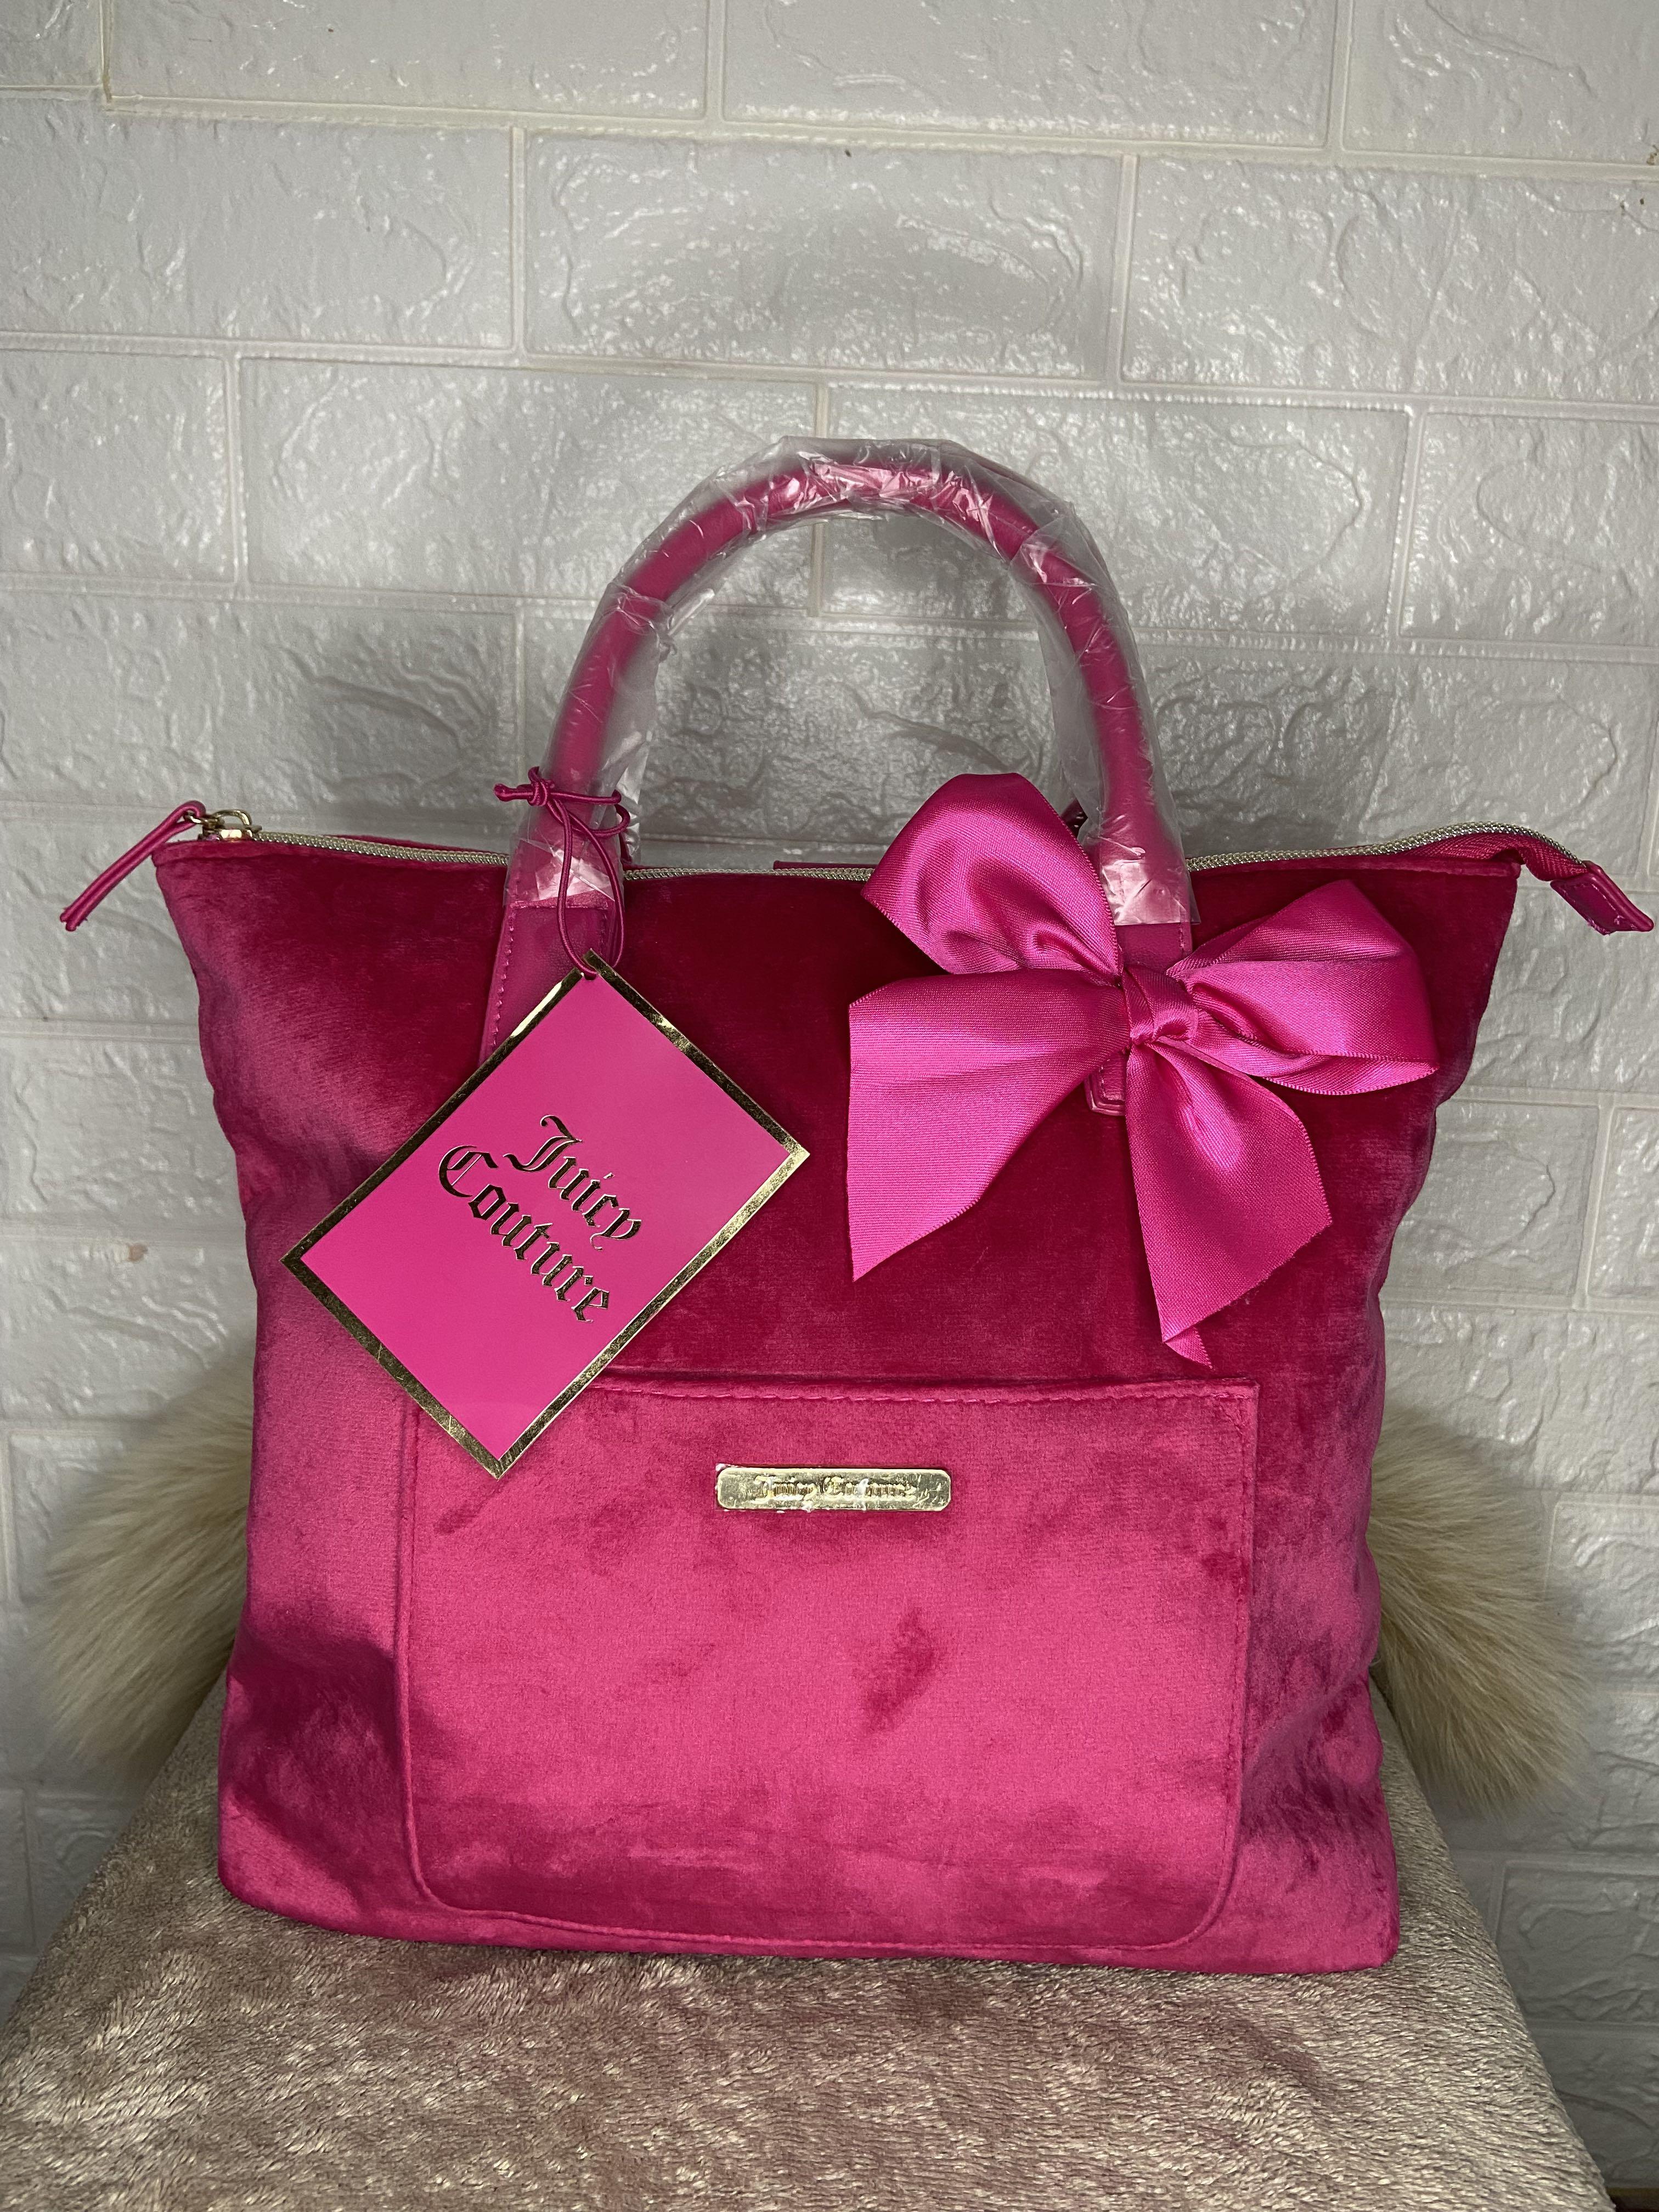 Juicy Couture velvet Tote Bag - Women's handbags